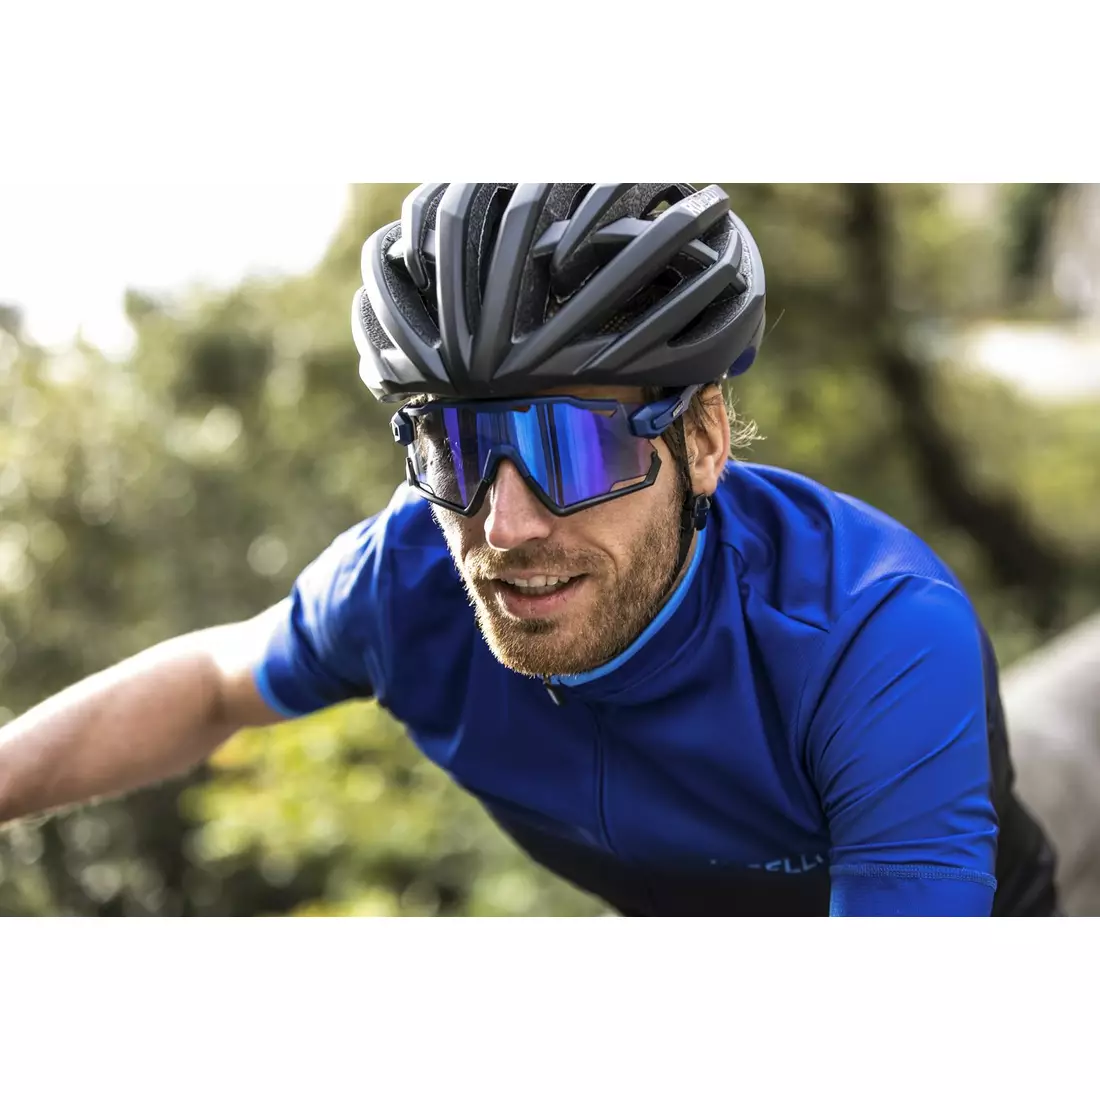 ROGELLI sport szemüveg cserélhető lencsékkel SWITCH kék